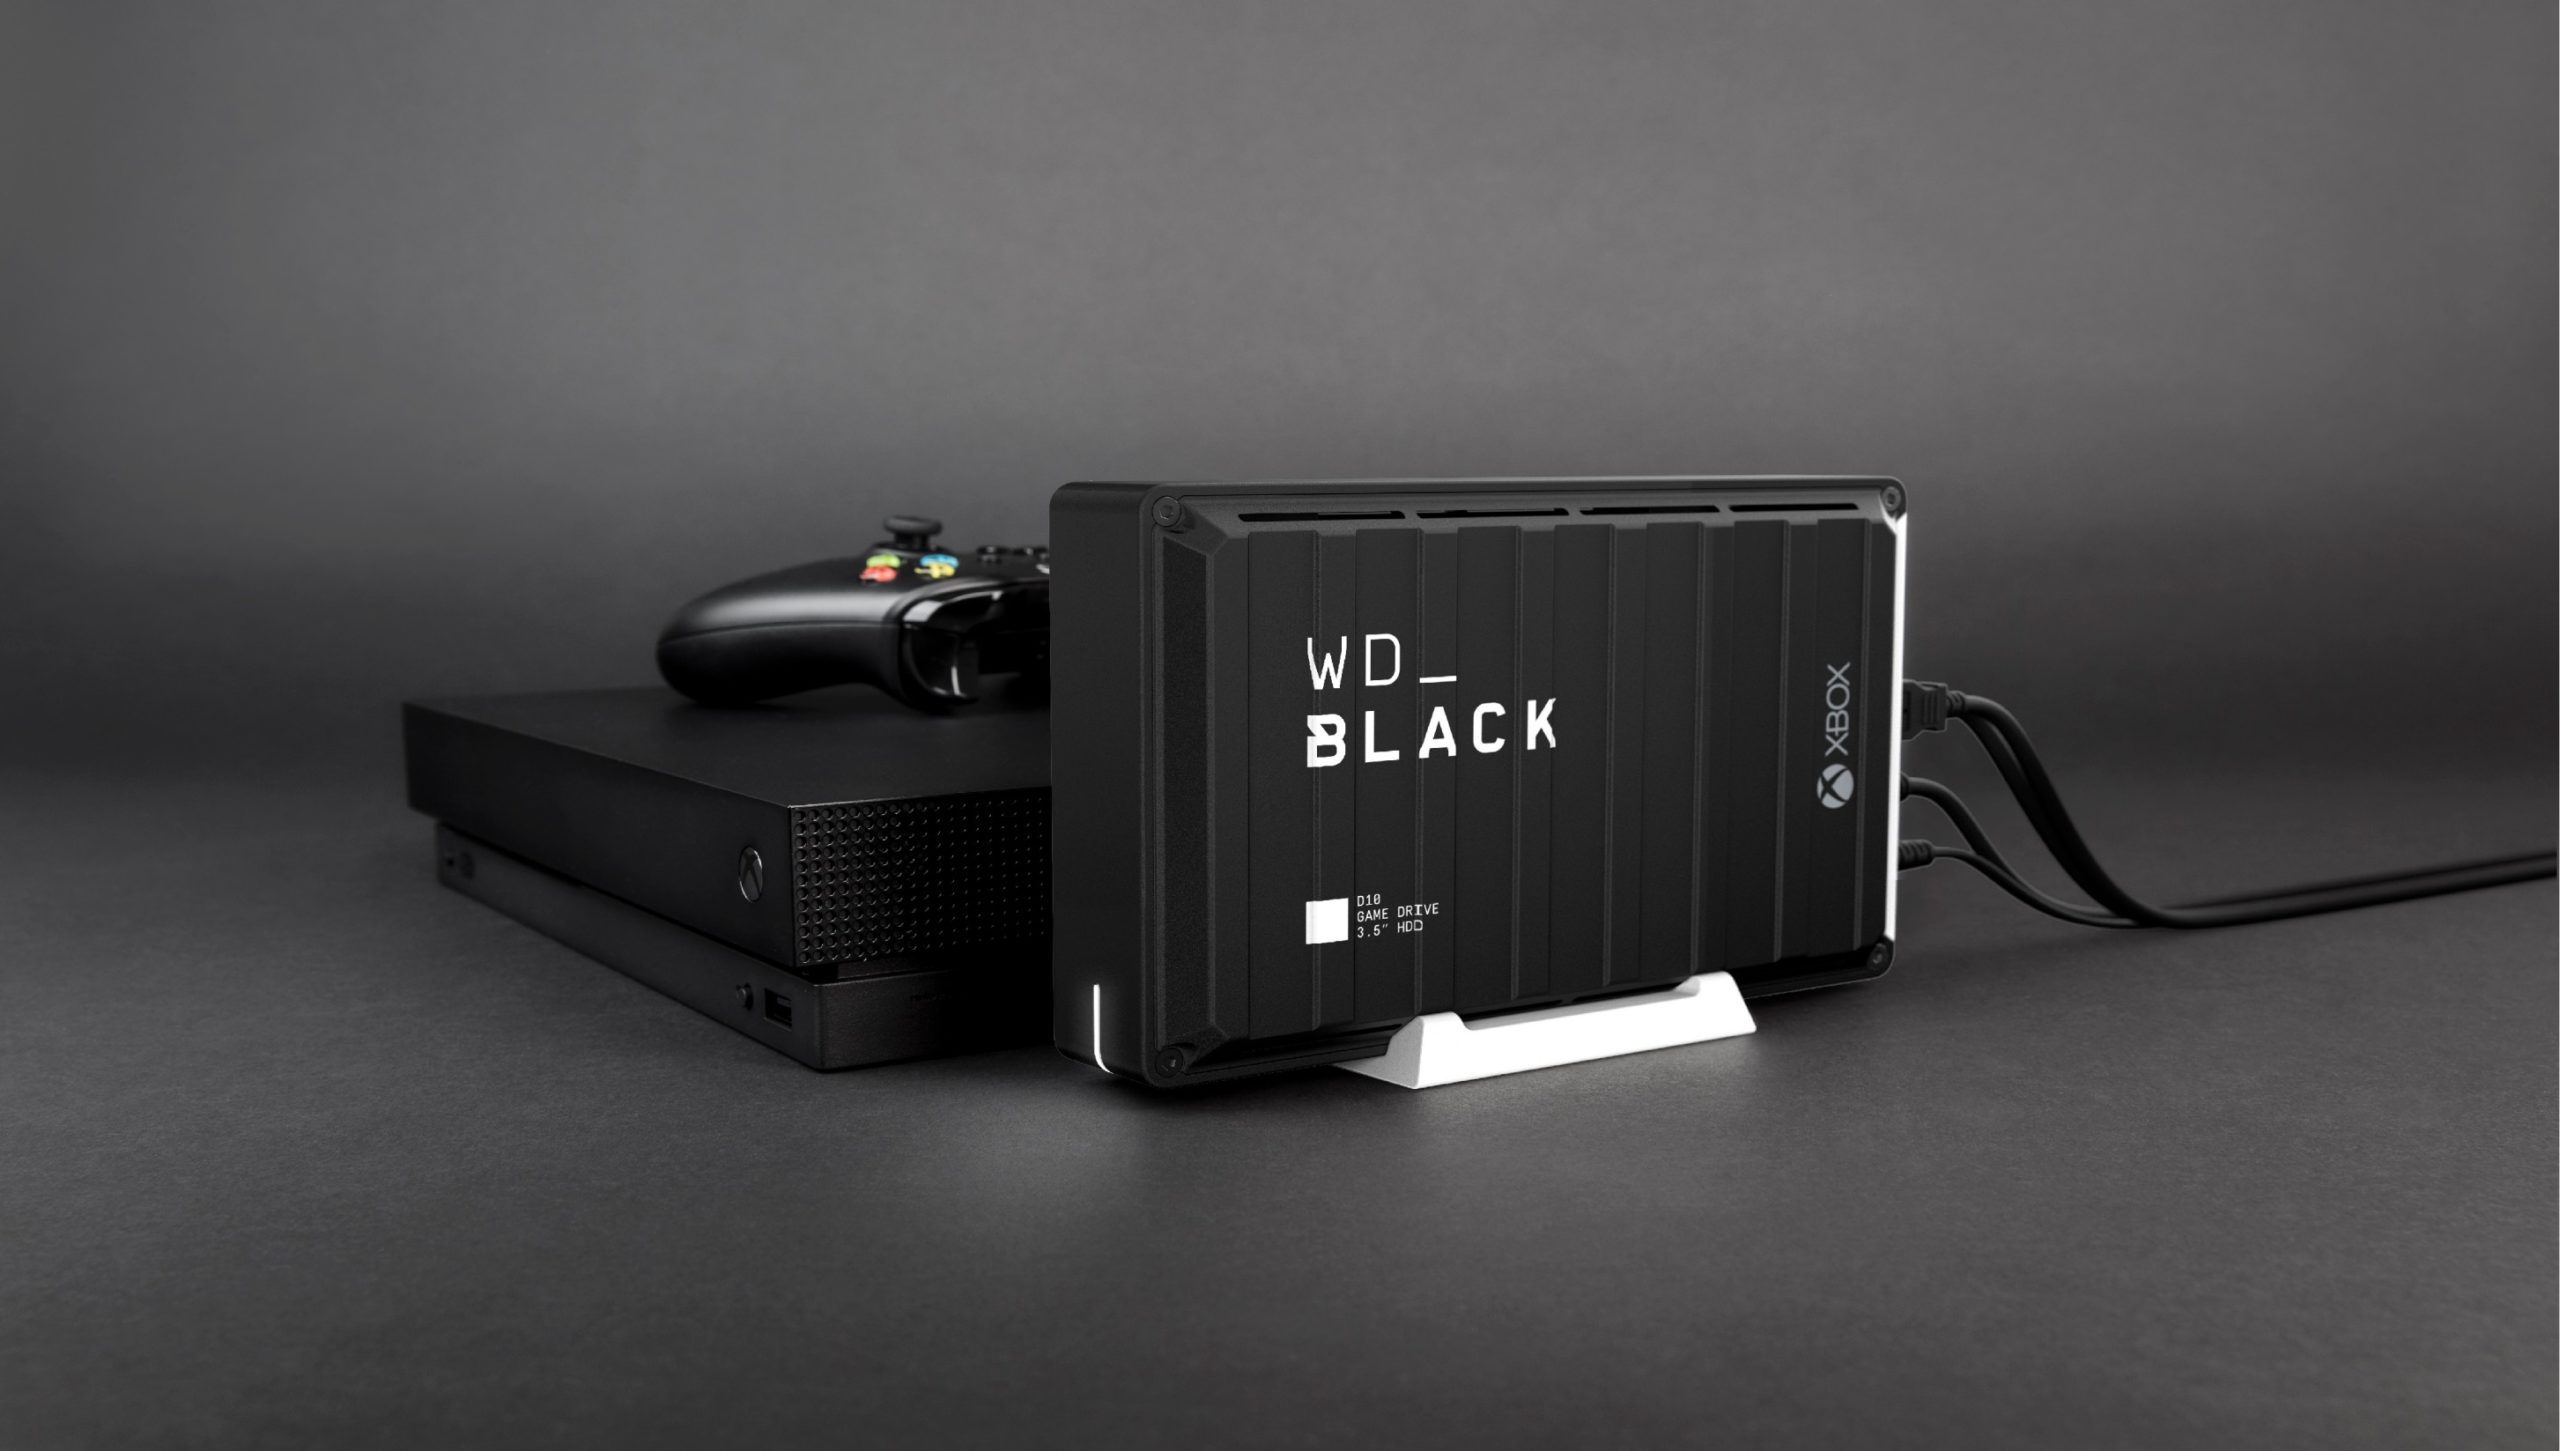 "ويسترن ديجيتال" تطلق مجموعة حلول التخزين WD BLACK™ للحاسوب ومنصات الألعاب في الشرق الأوسط